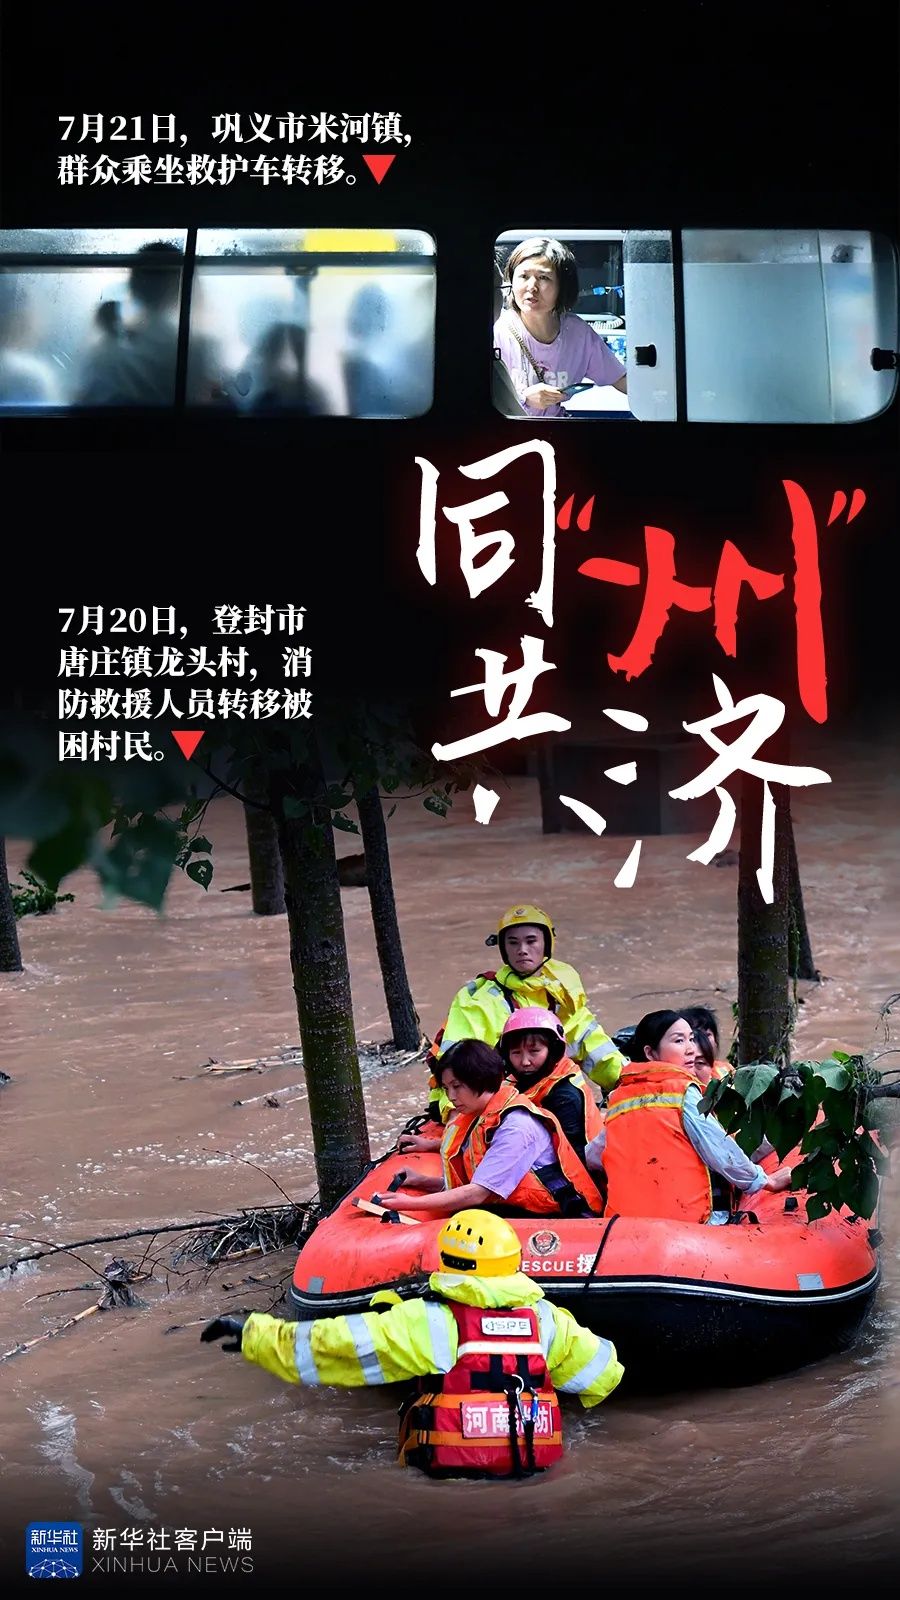 强降水|风雨揪心 救援同心——新华社记者多路直击河南强降水